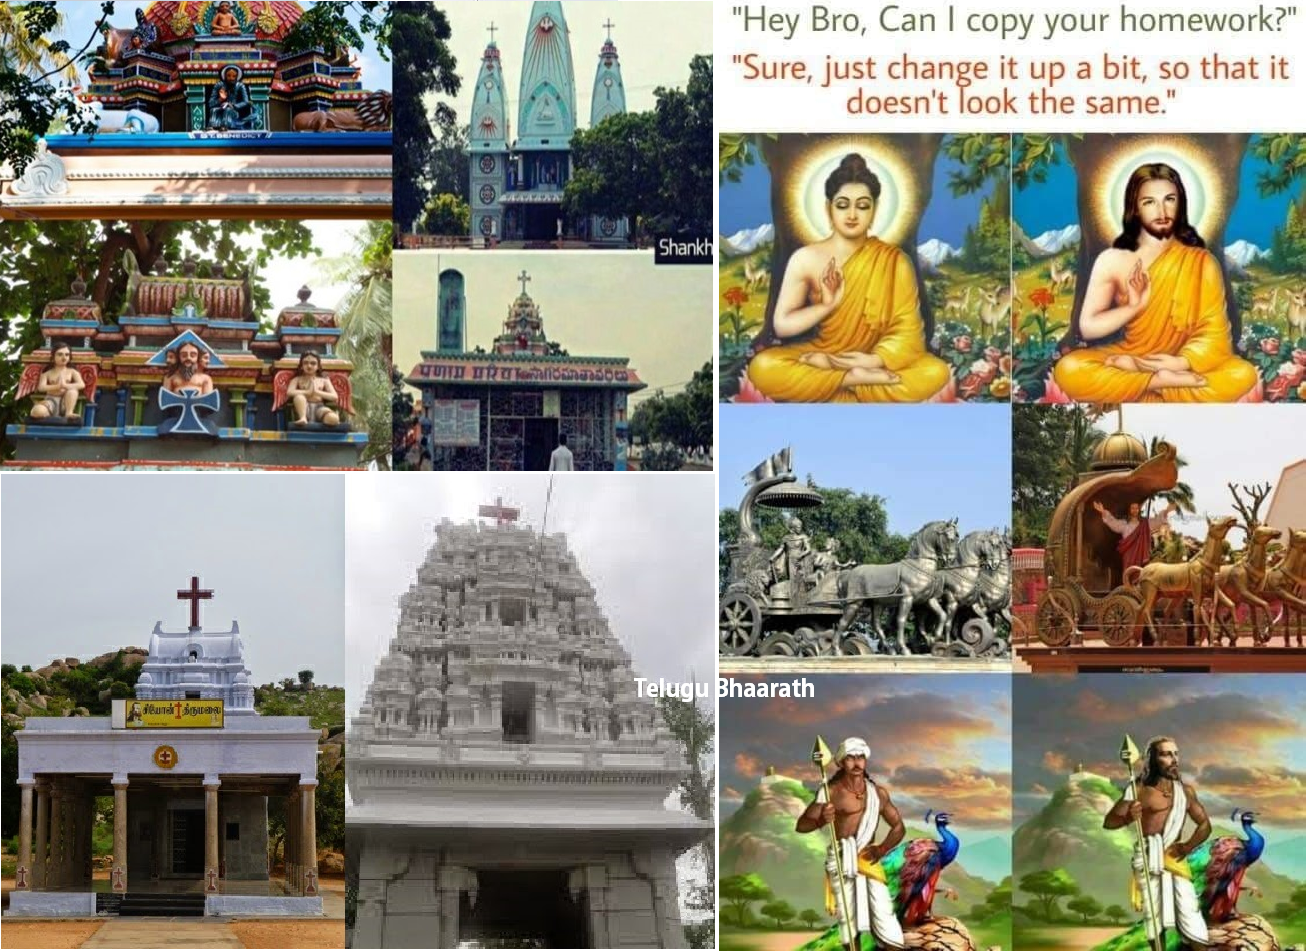 కాపీ కొడుతున్న క్రైస్తవం - హిందుత్వాన్ని నాశనం చేసే కుట్ర - Conspiracy to destroy Hindutva